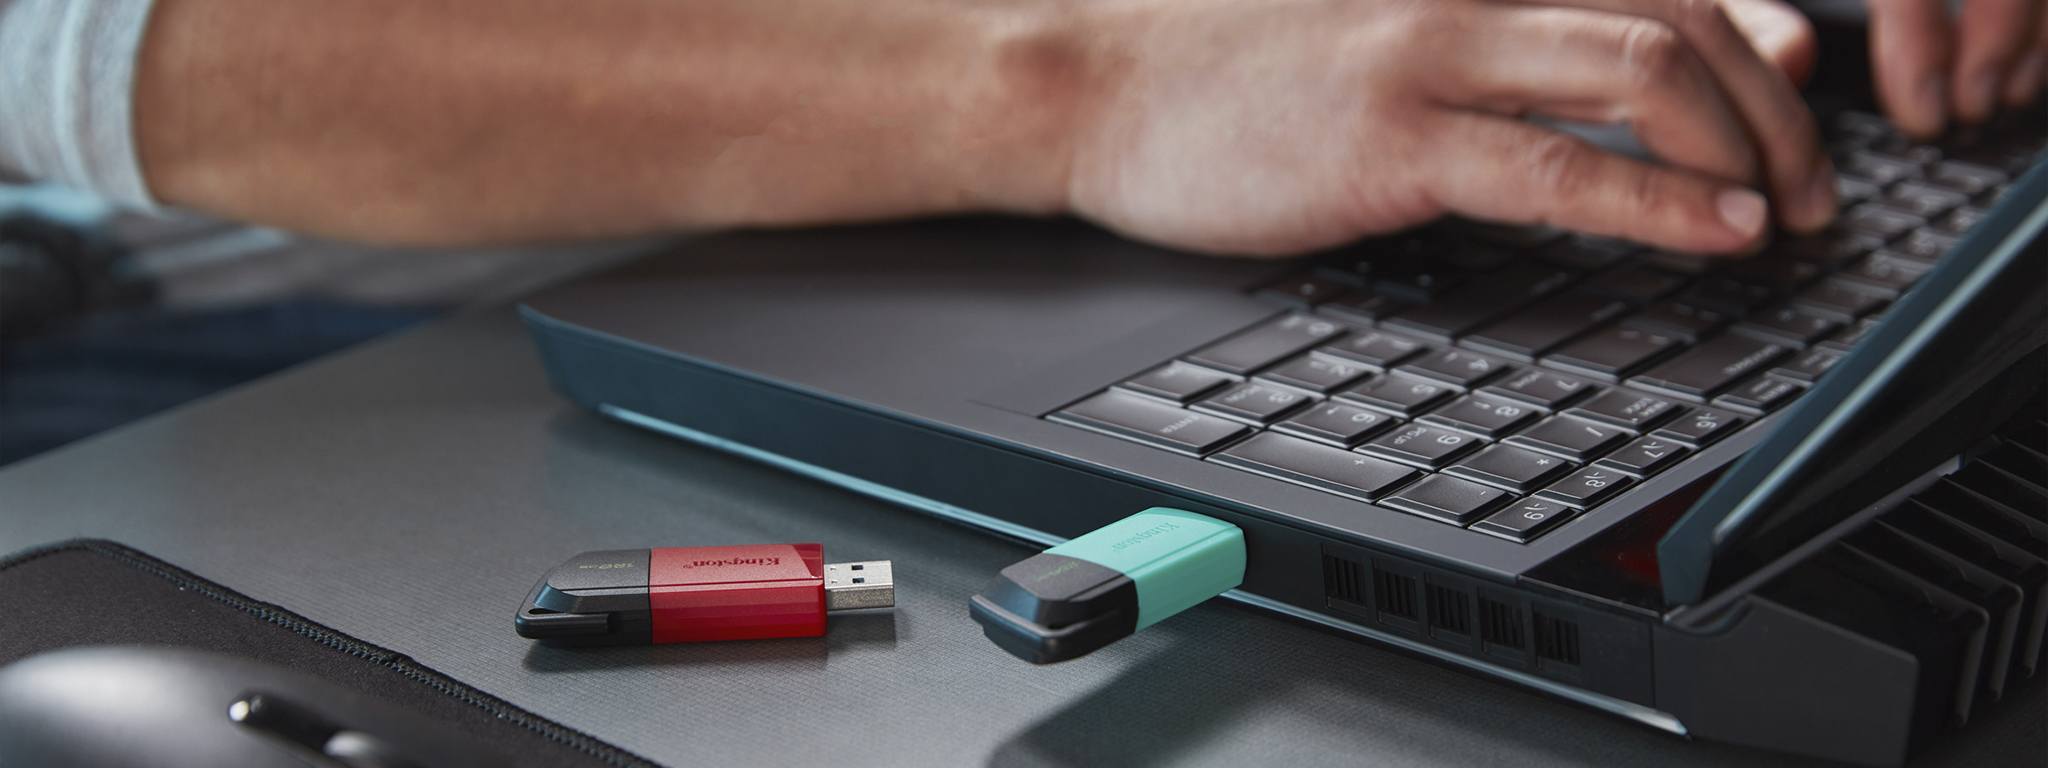 2 DT Exodia M USB-Sticks, einer mit grüner und einer mit roter Kappe, eines Schreibtisches mit einer Person an einem Laptop im Hintergrund